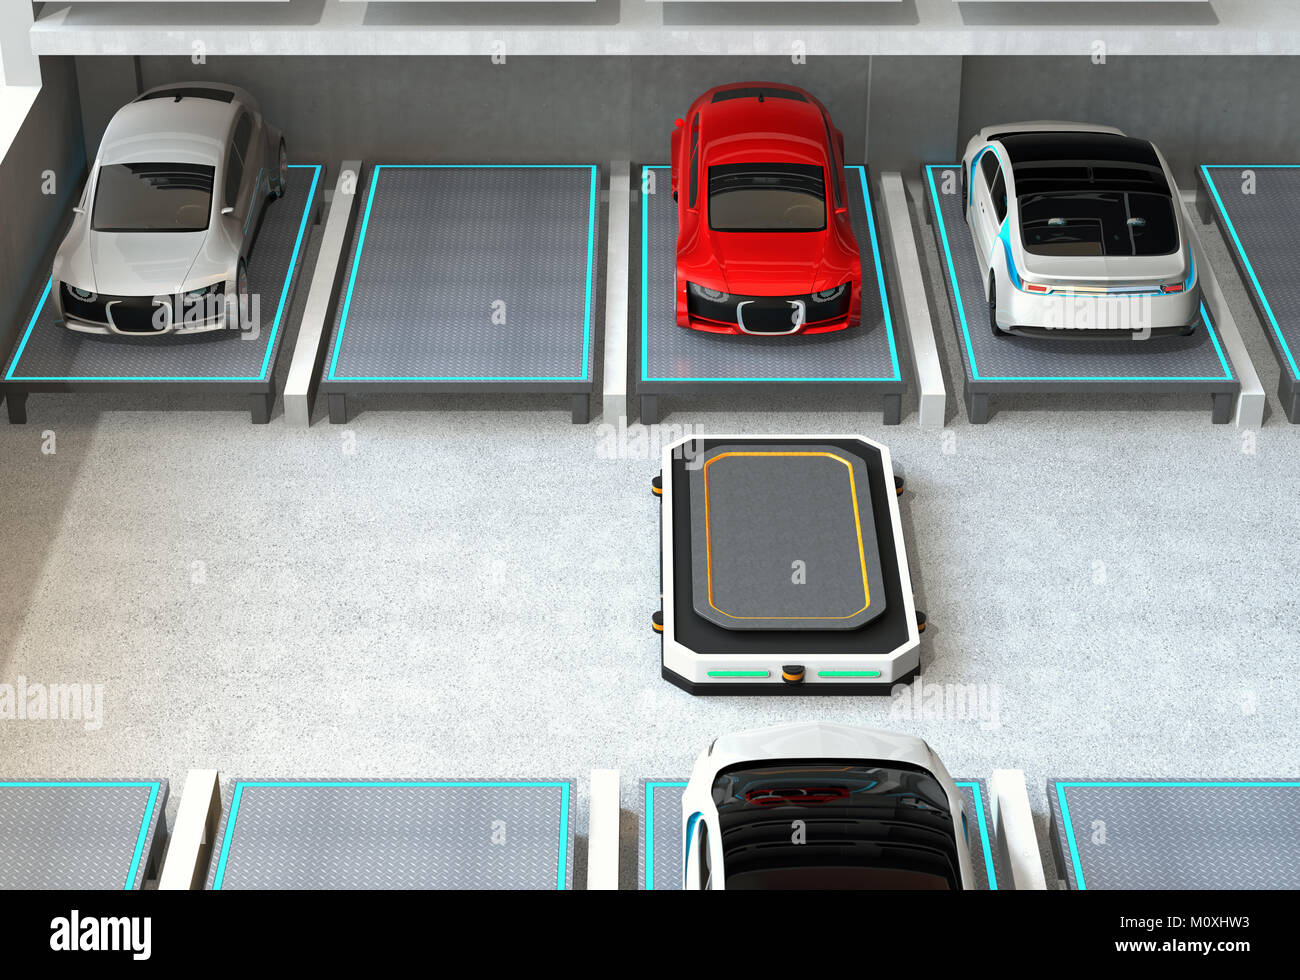 Vehículos de guiado Automatizado (AGV) dejando el espacio de estacionamiento para elegir el próximo coche. Concepto de sistema de aparcamiento automático. Foto de stock